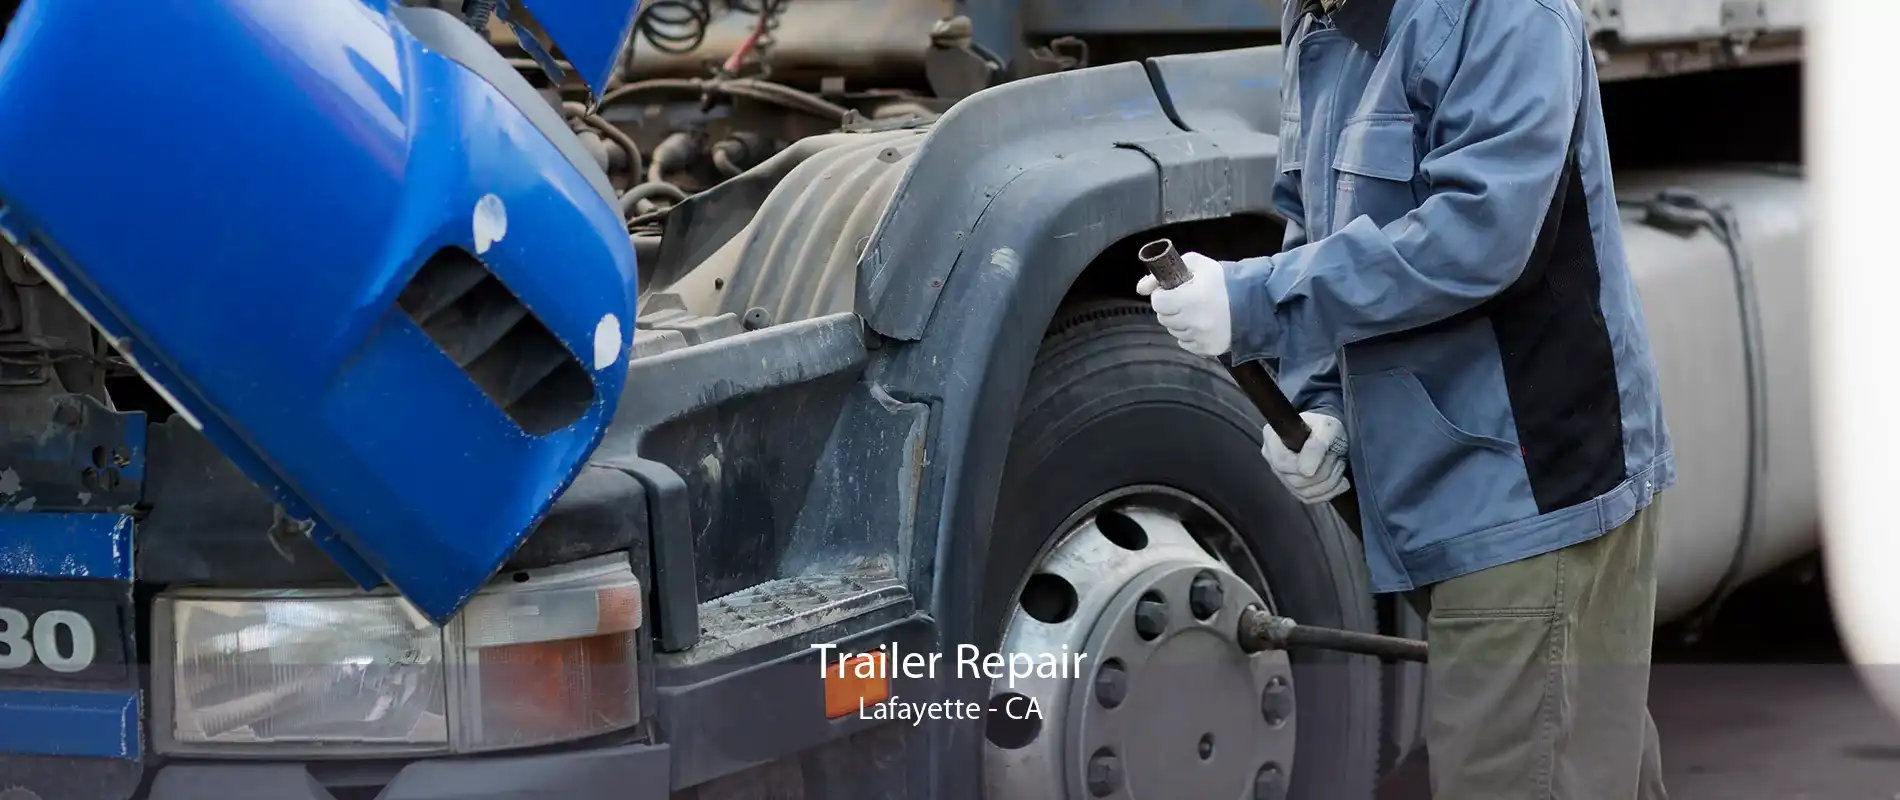 Trailer Repair Lafayette - CA